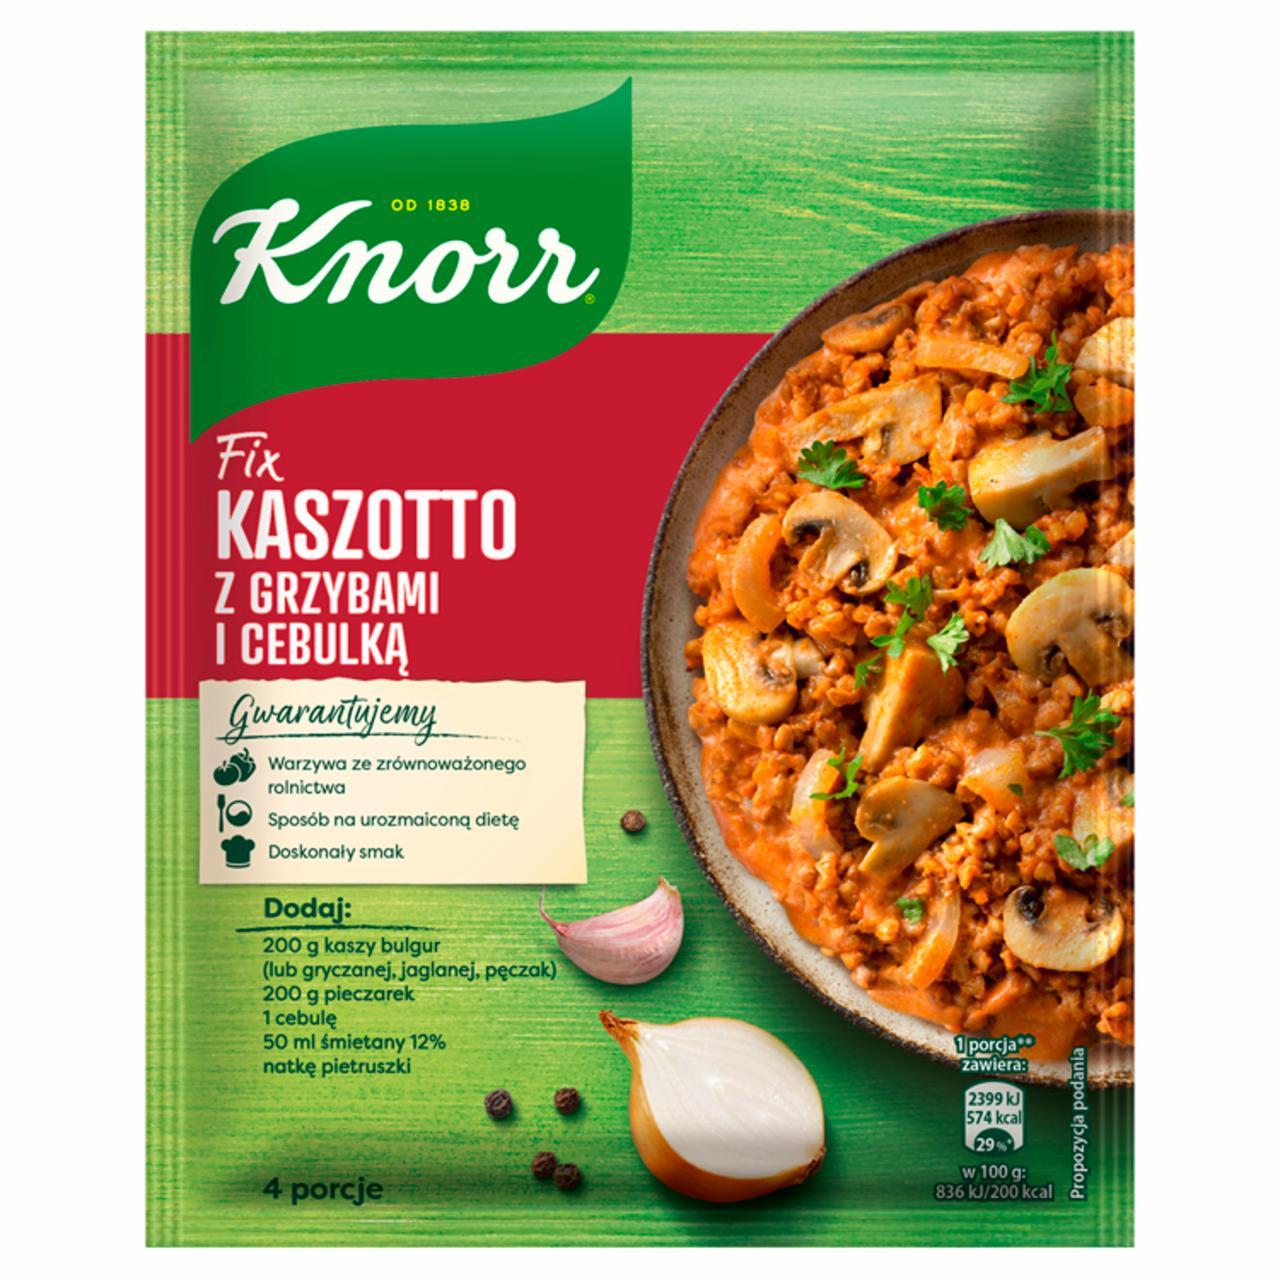 Zdjęcia - Knorr Fix Kaszotto z grzybami i cebulką 51 g